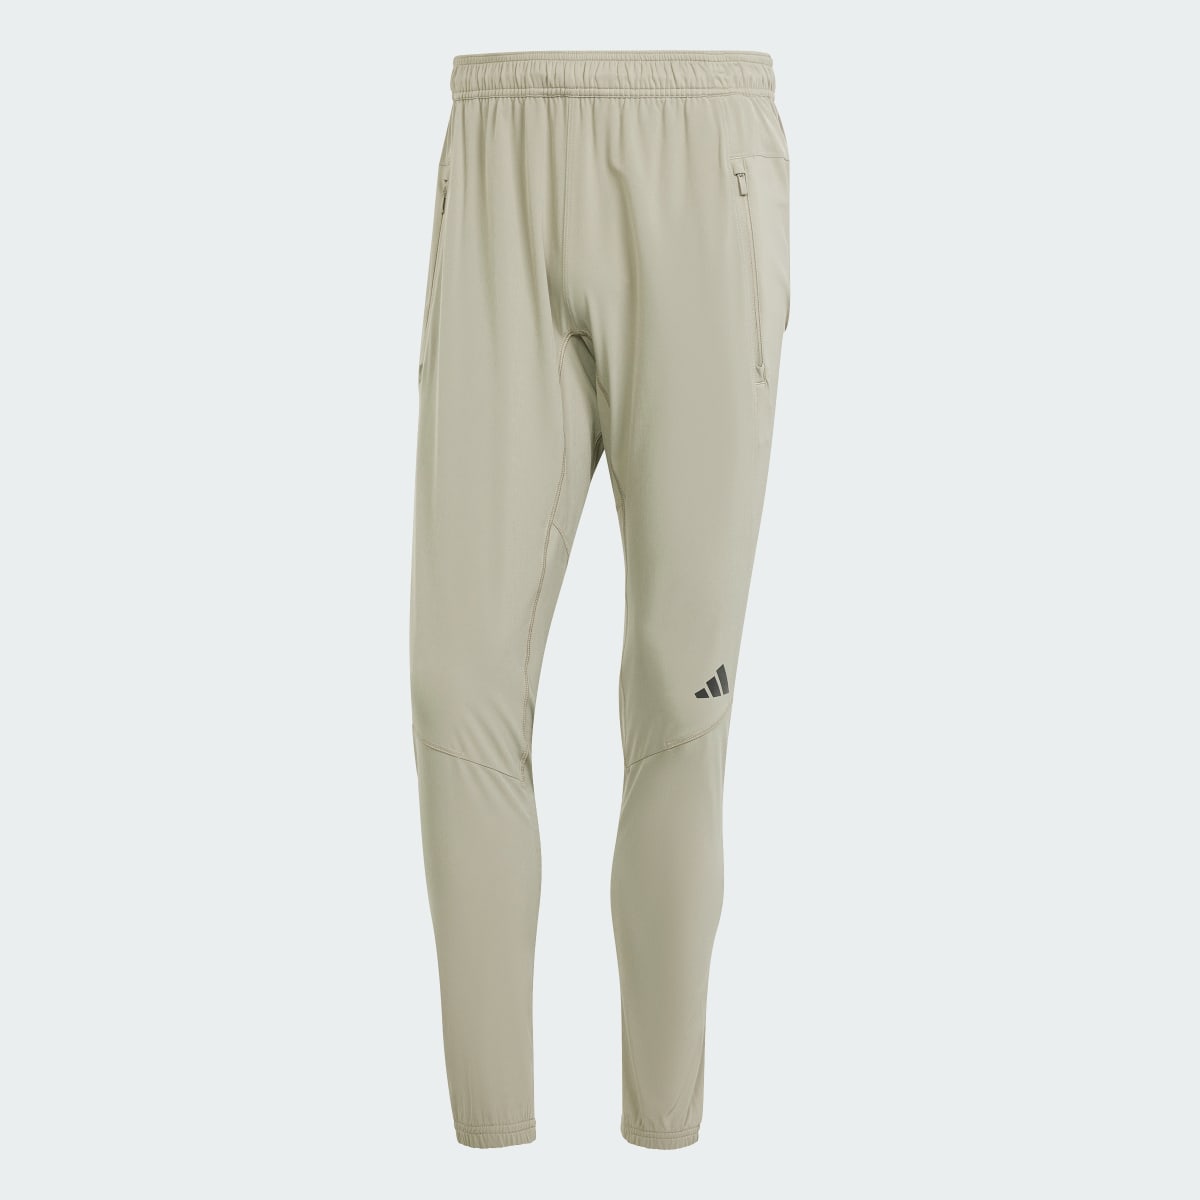 Adidas Pantaloni Designed for Training Workout. 4